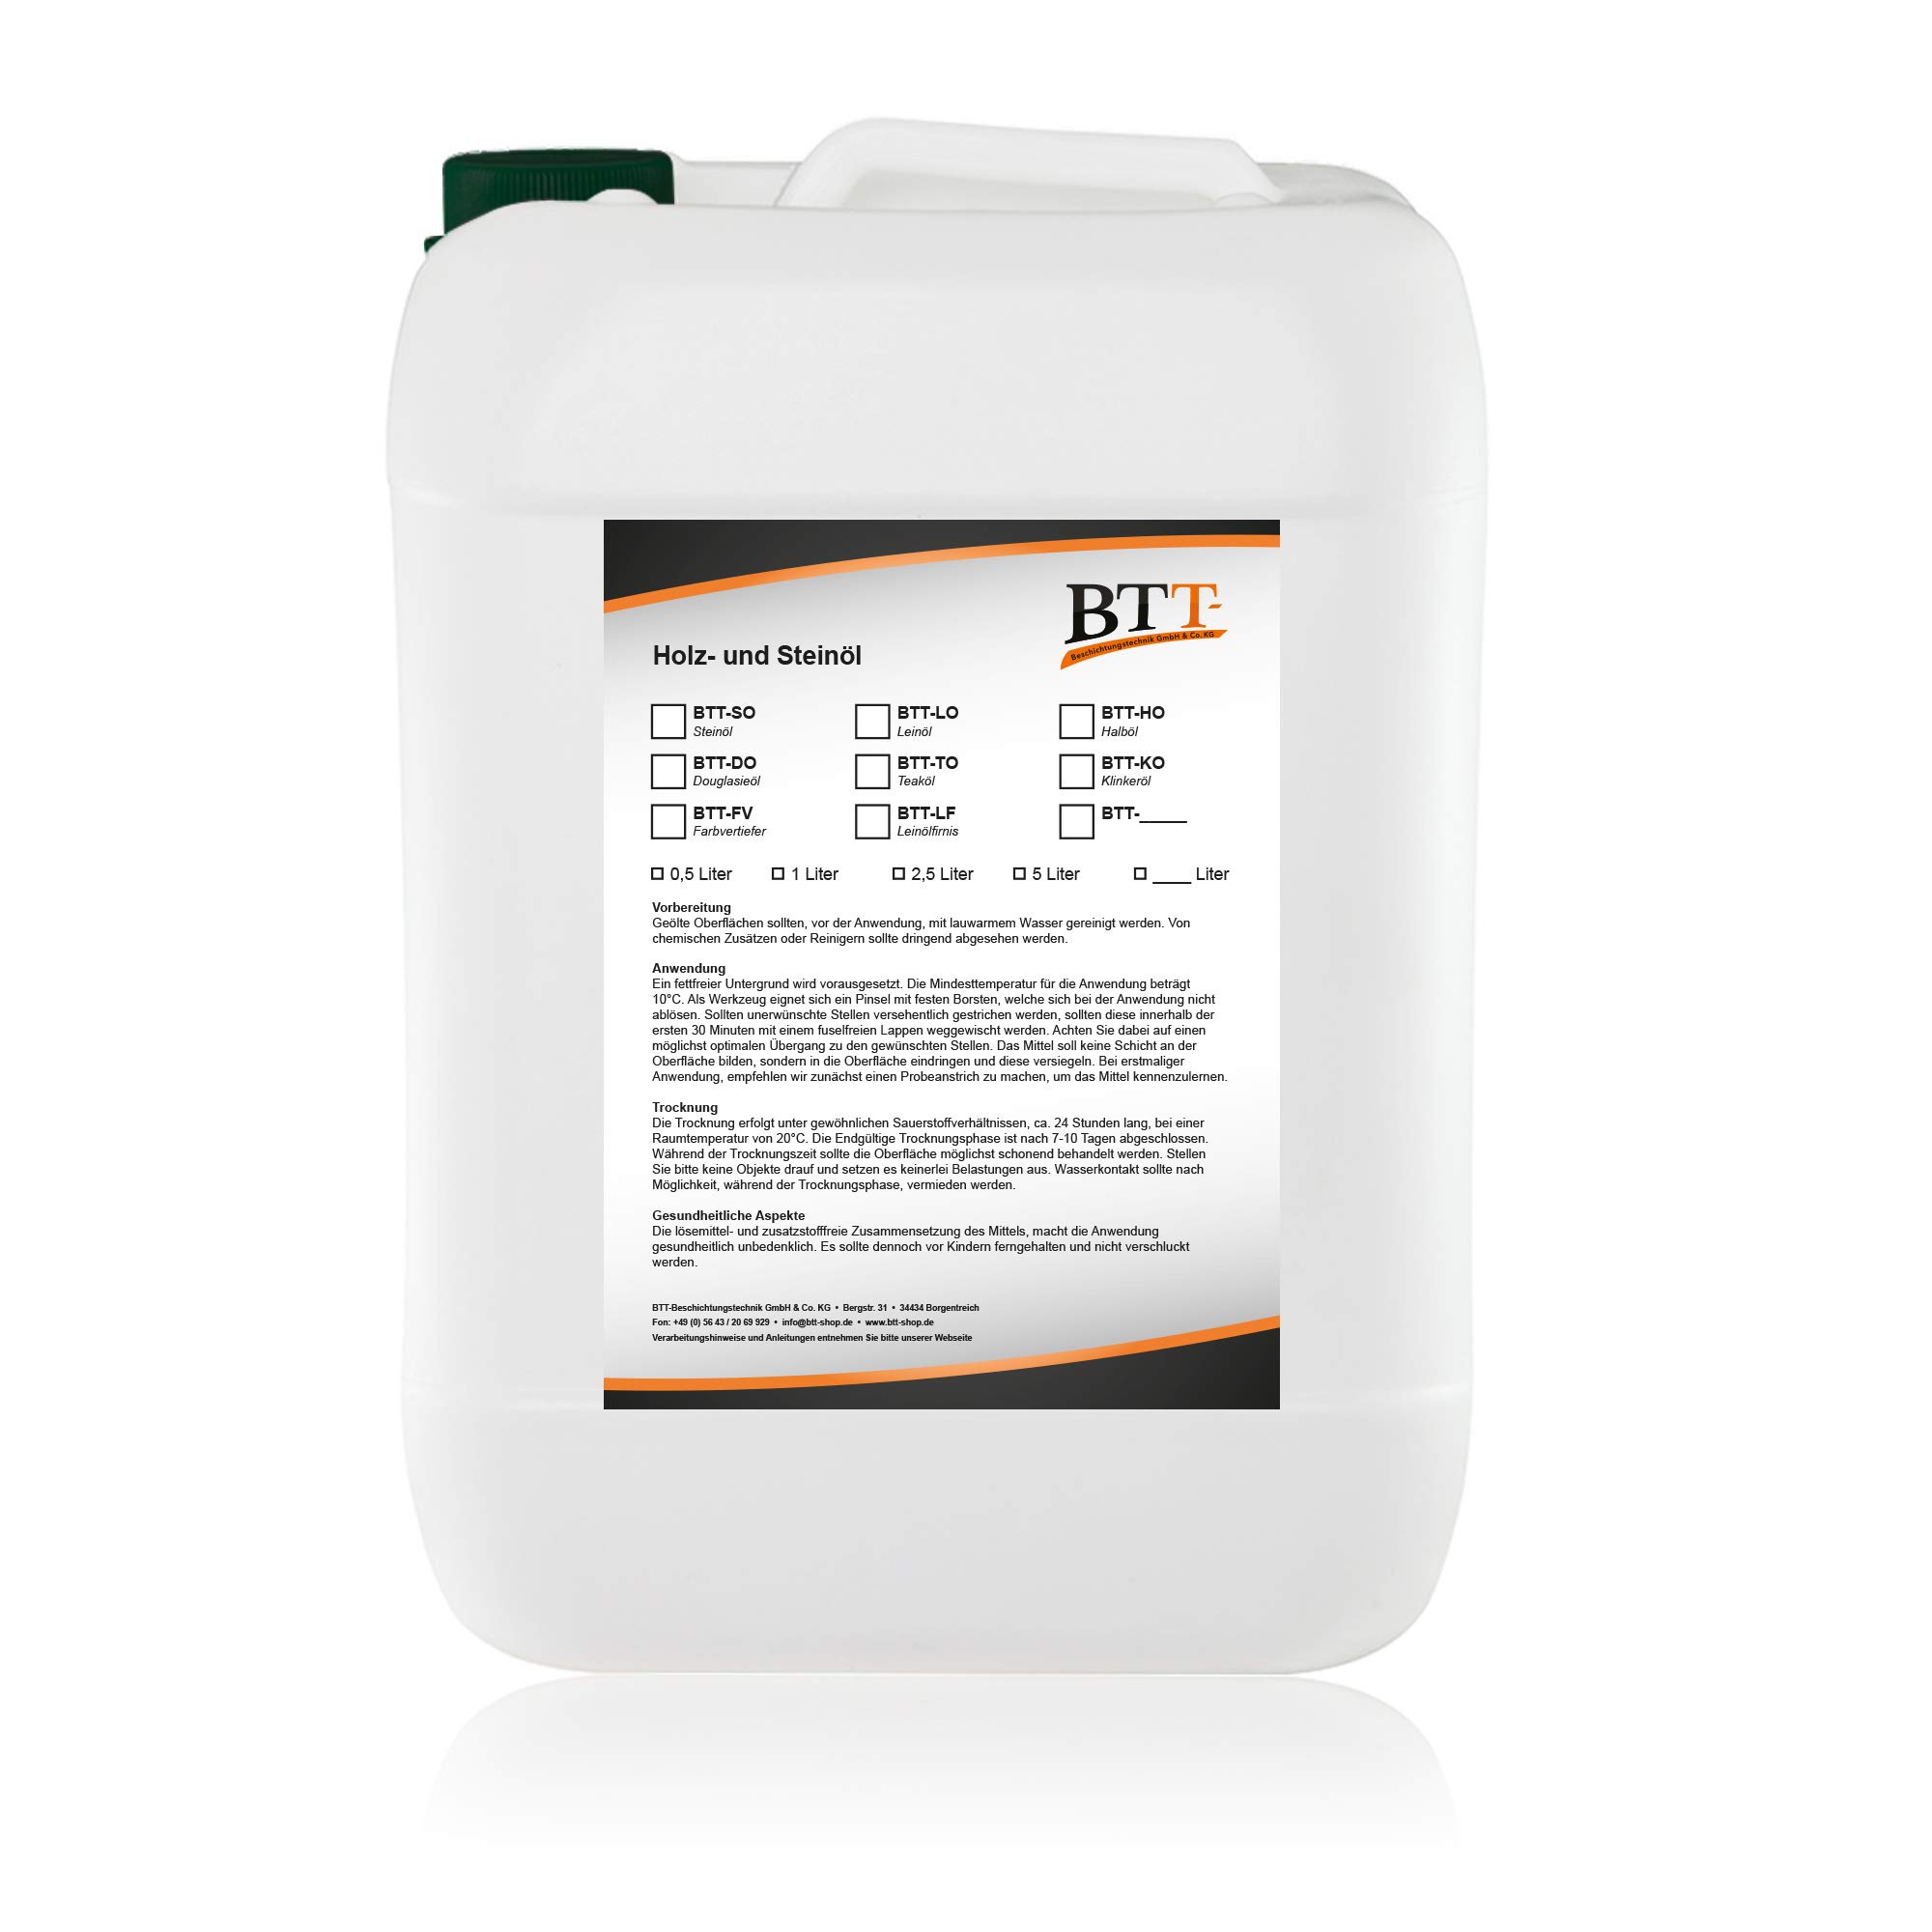 BTT-TO Teakholzöl (2,5 Liter) zum Witterungsschutz, Versiegelung und Imprägnierung von Teakholz, Terrassendielen, Yachtböden und Holzböden